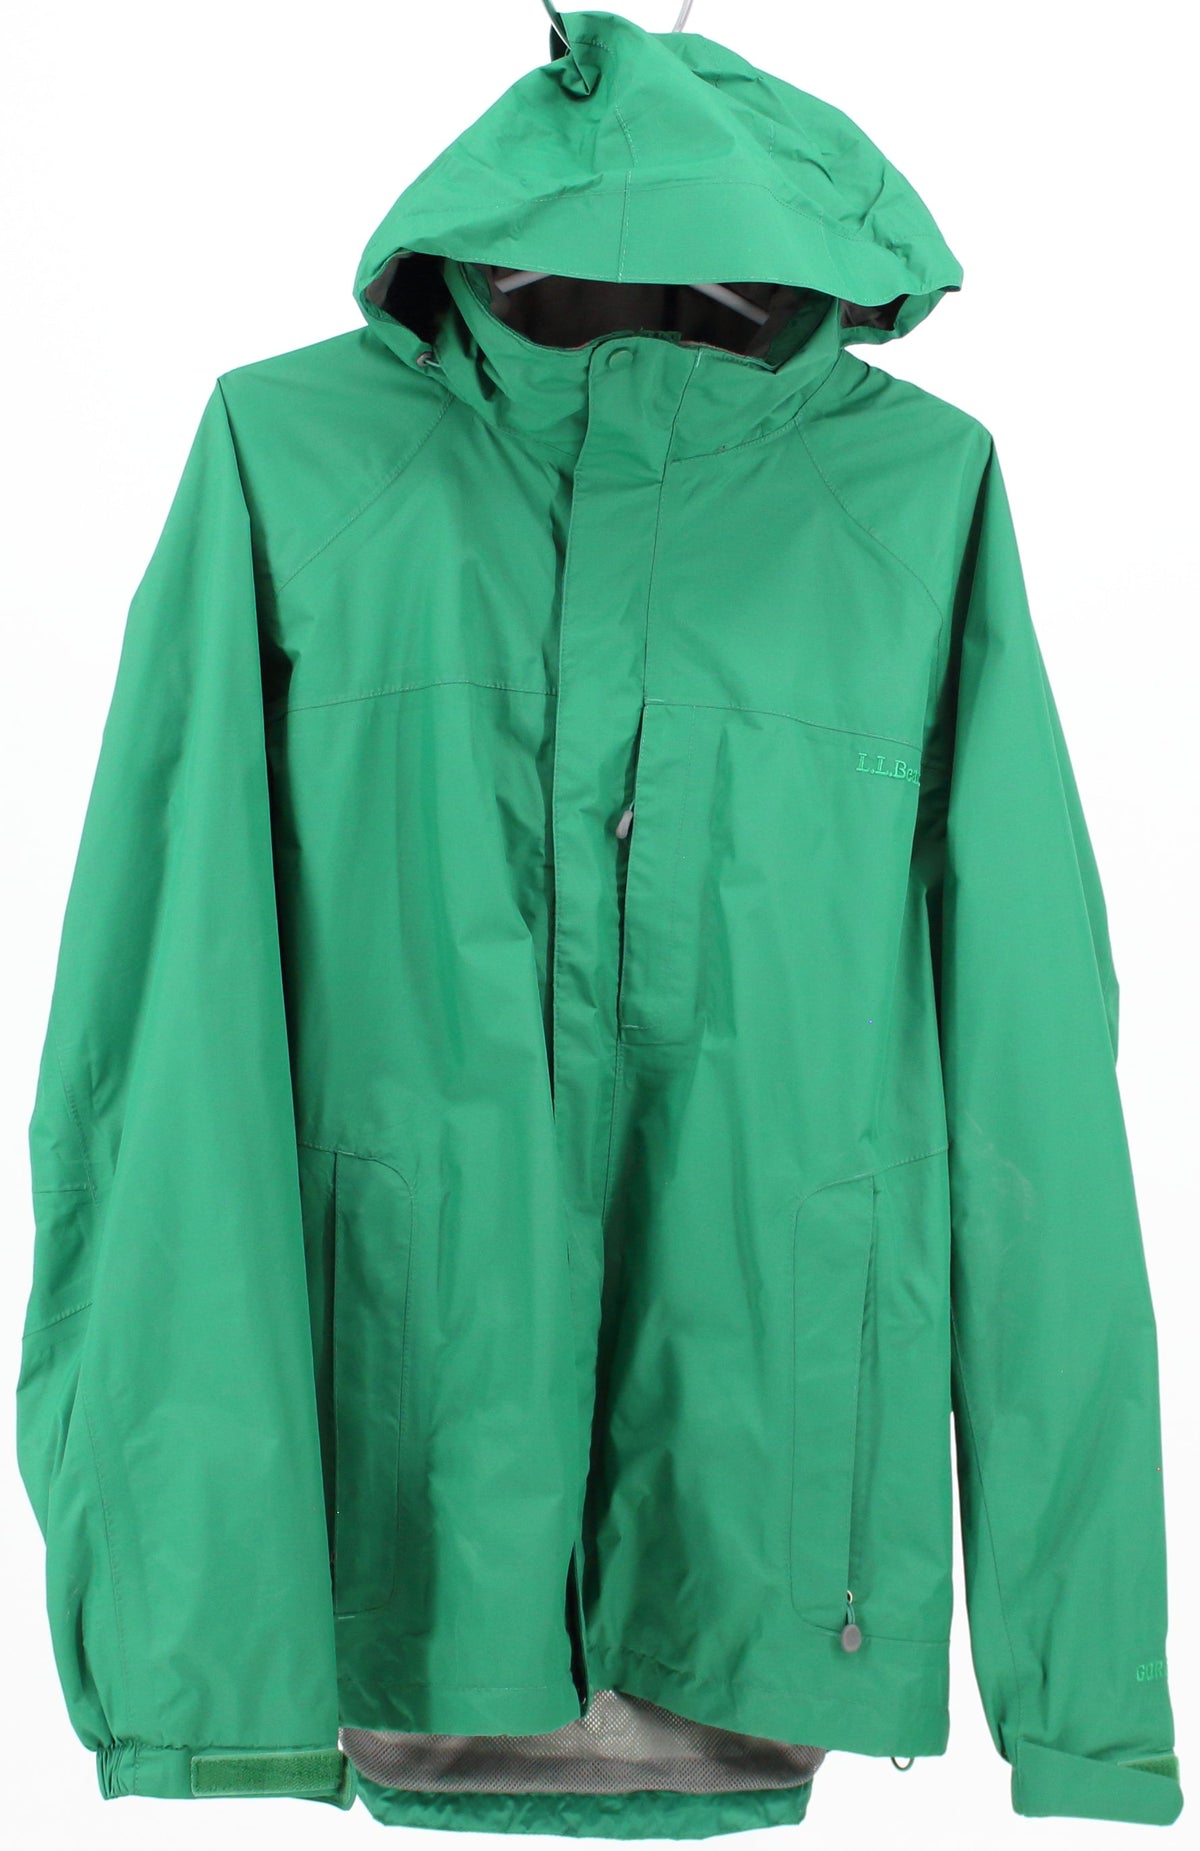 L.L.Bean Green Rain Jacket